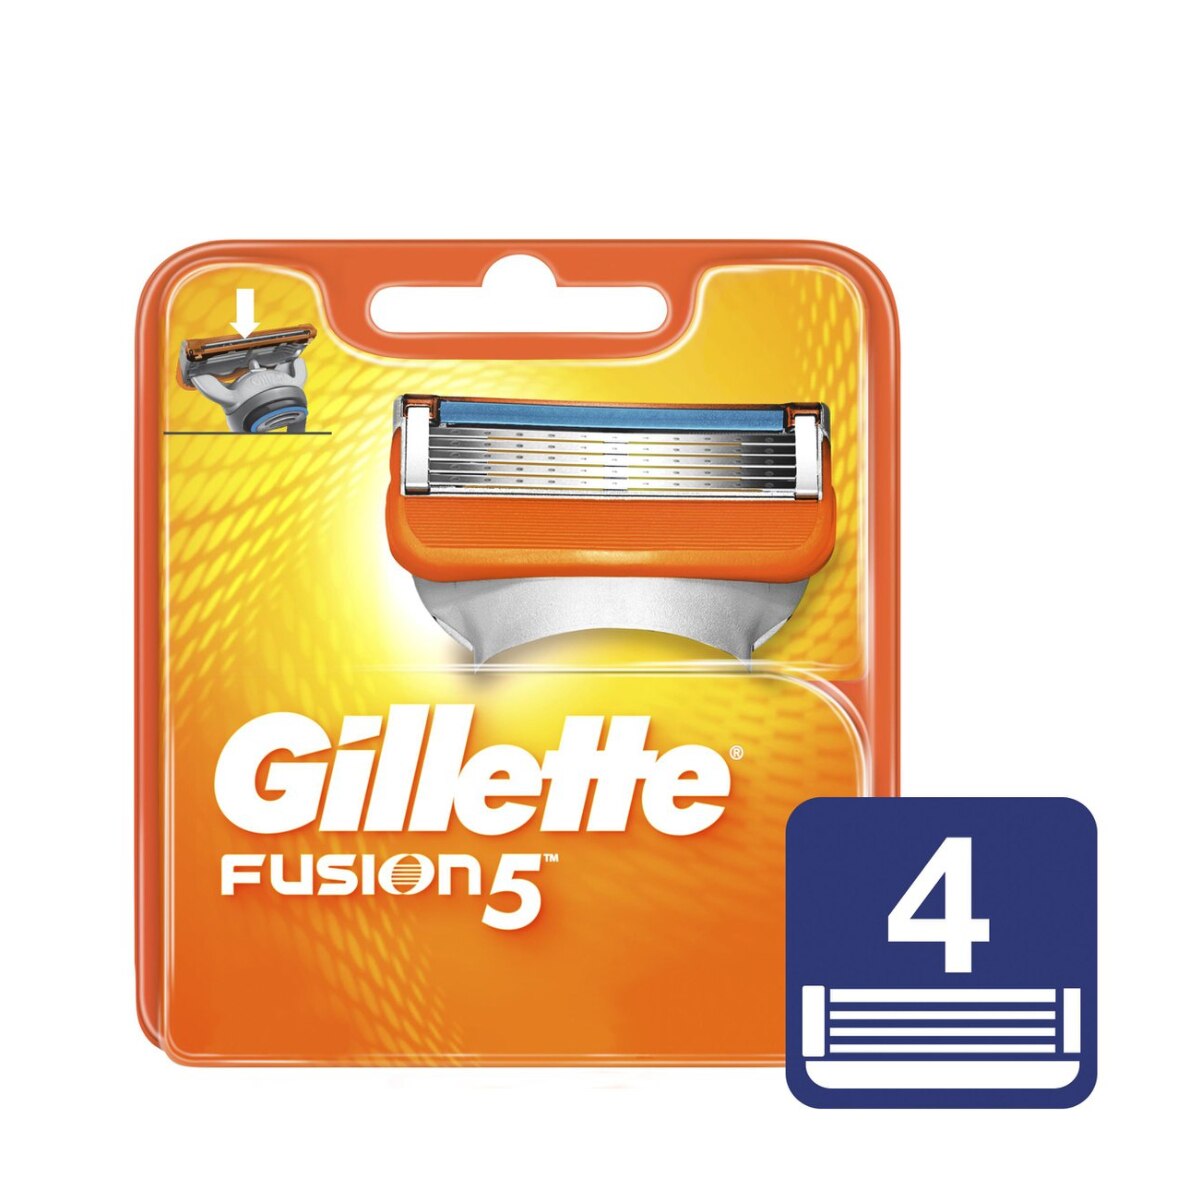 Carga Gillette Fusion 5 4 Unidades